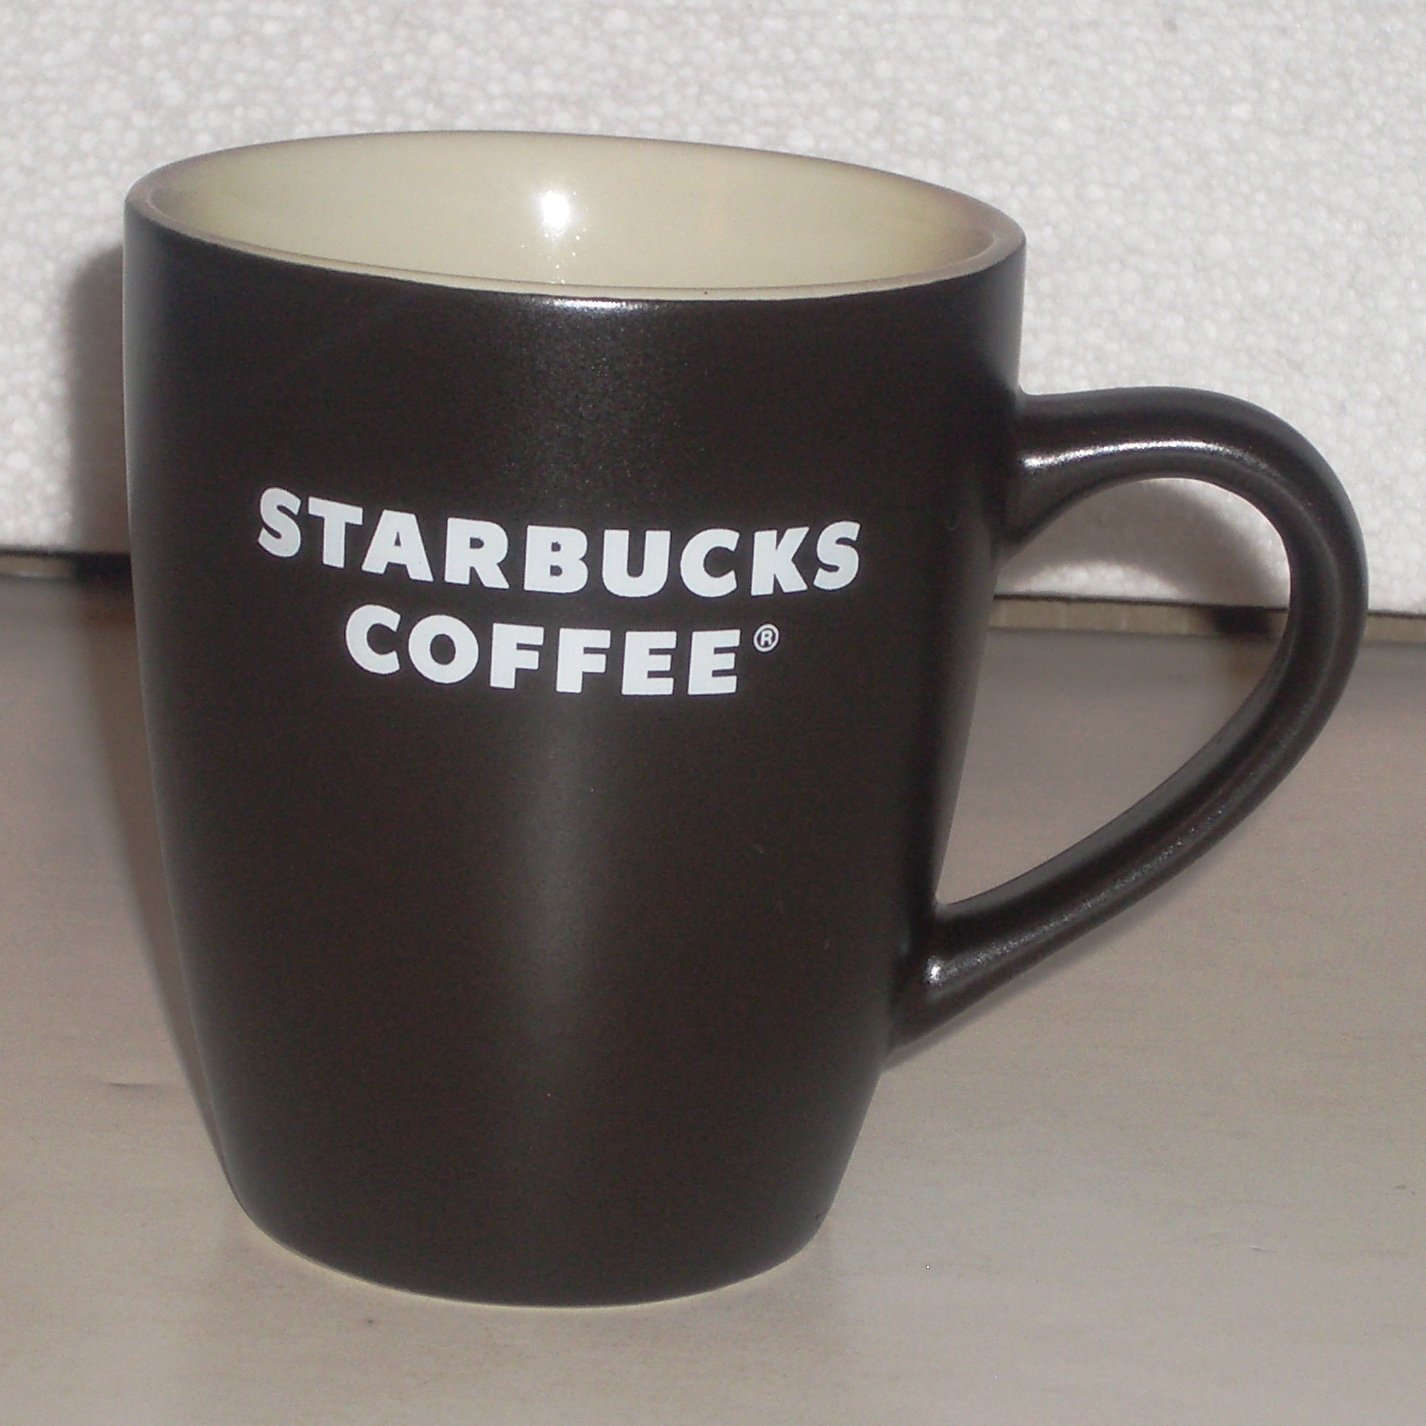 Starbucks Coffee Mug 12 oz Classic Mocha Brown